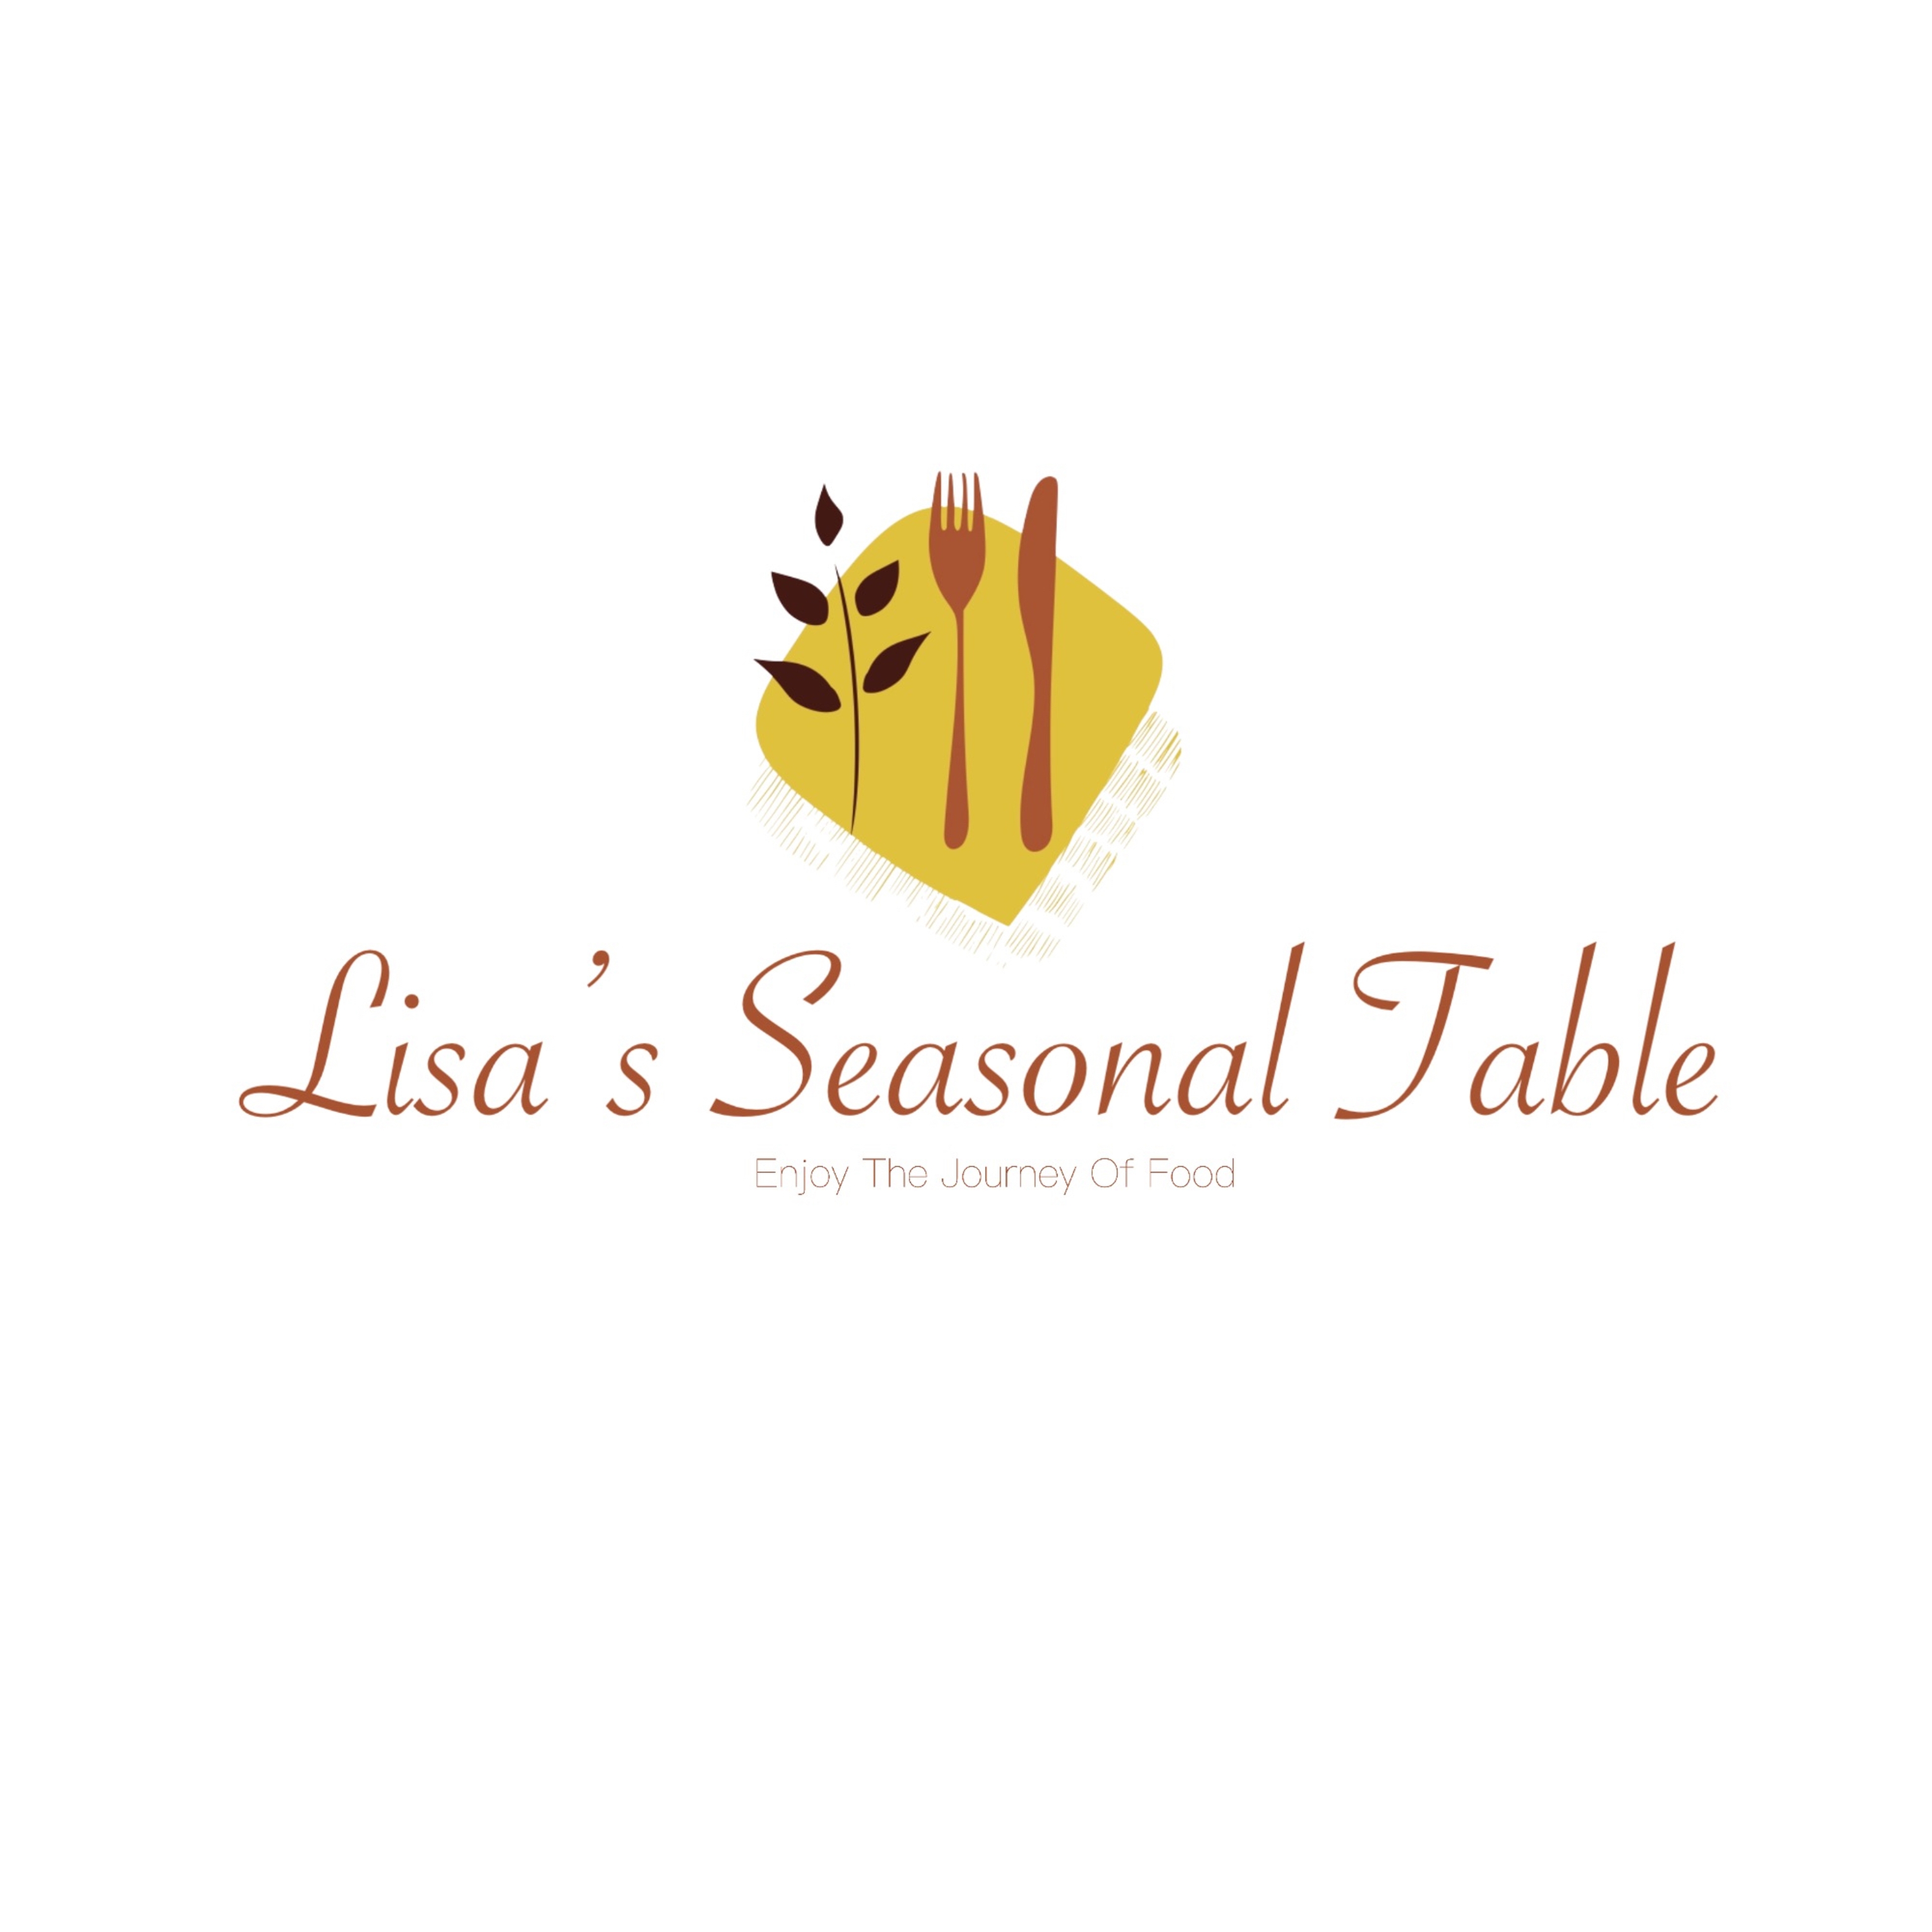 Lisa’s Seasonal Table